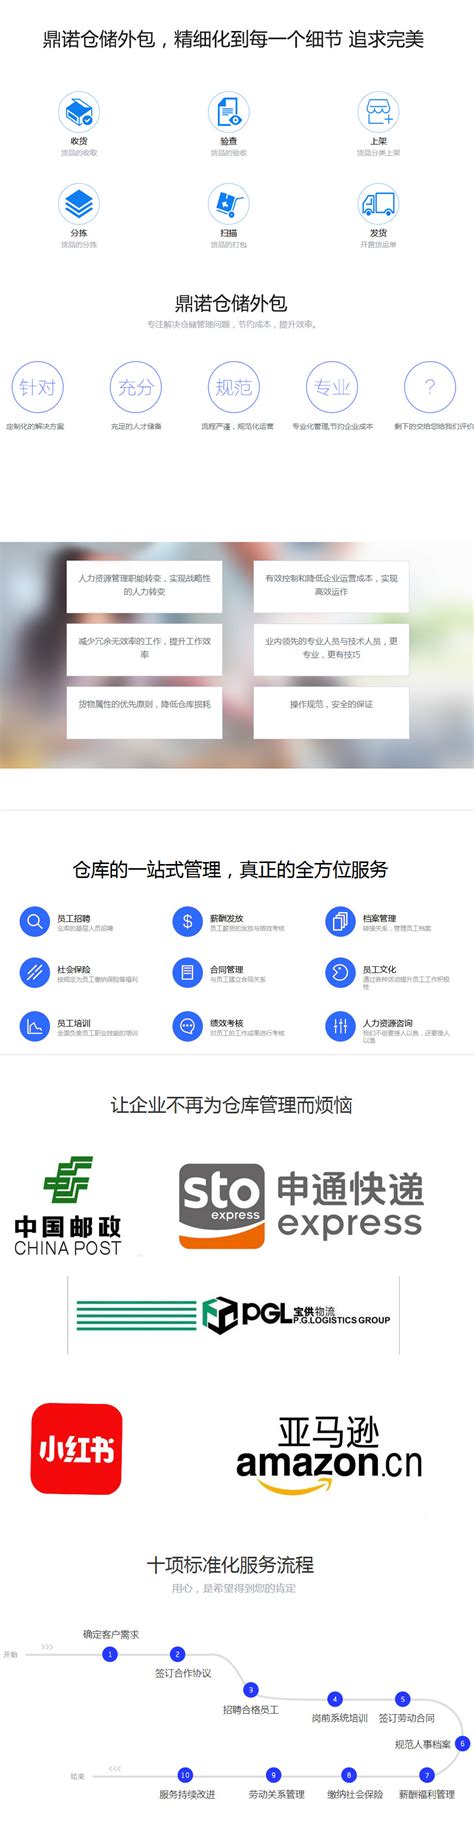 昆山加工外包哪个好「上海英帅供应链管理供应」 - 8684网企业资讯